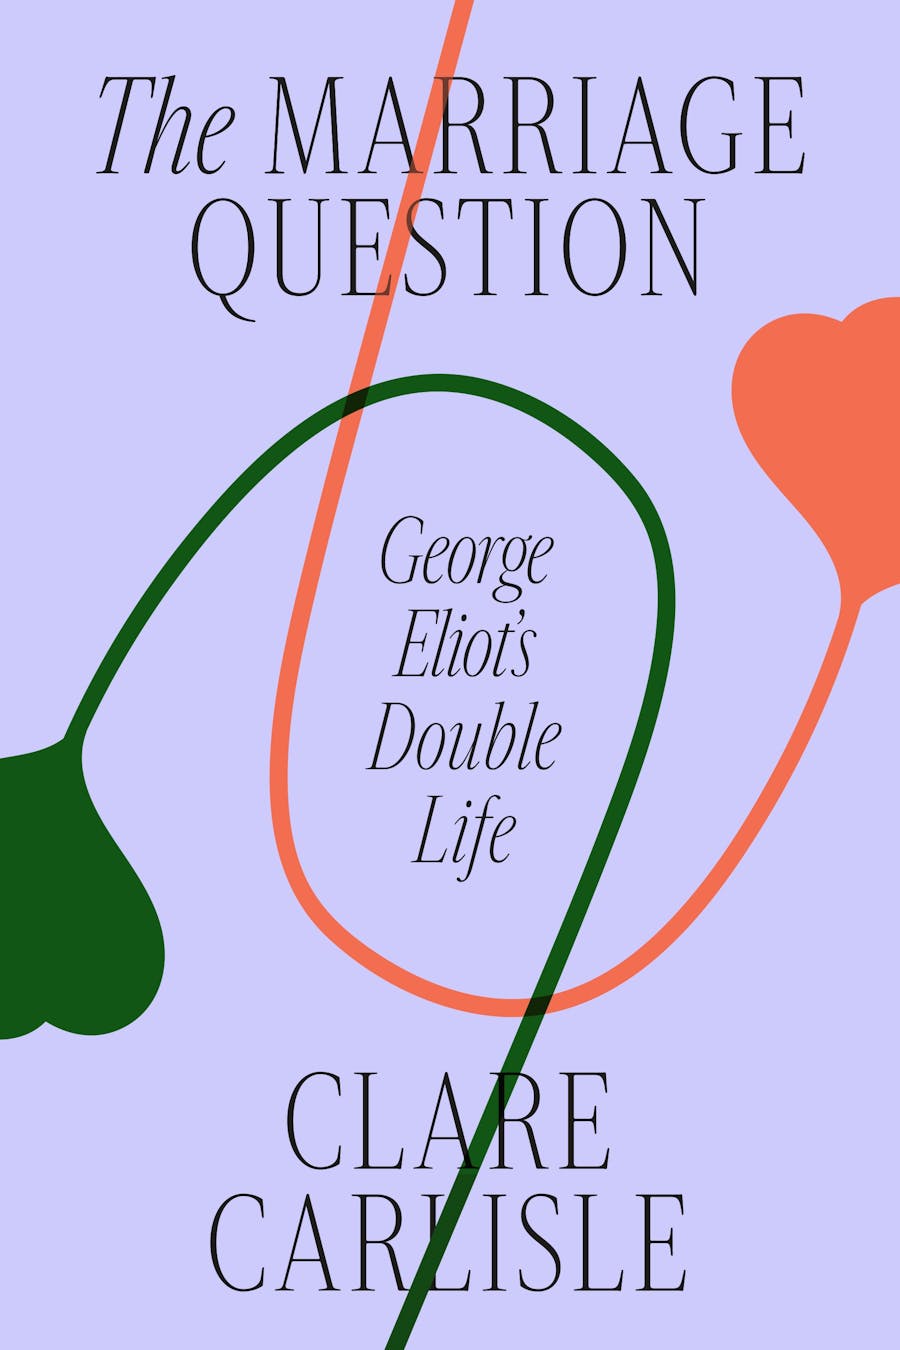  George Eliot's Double Life